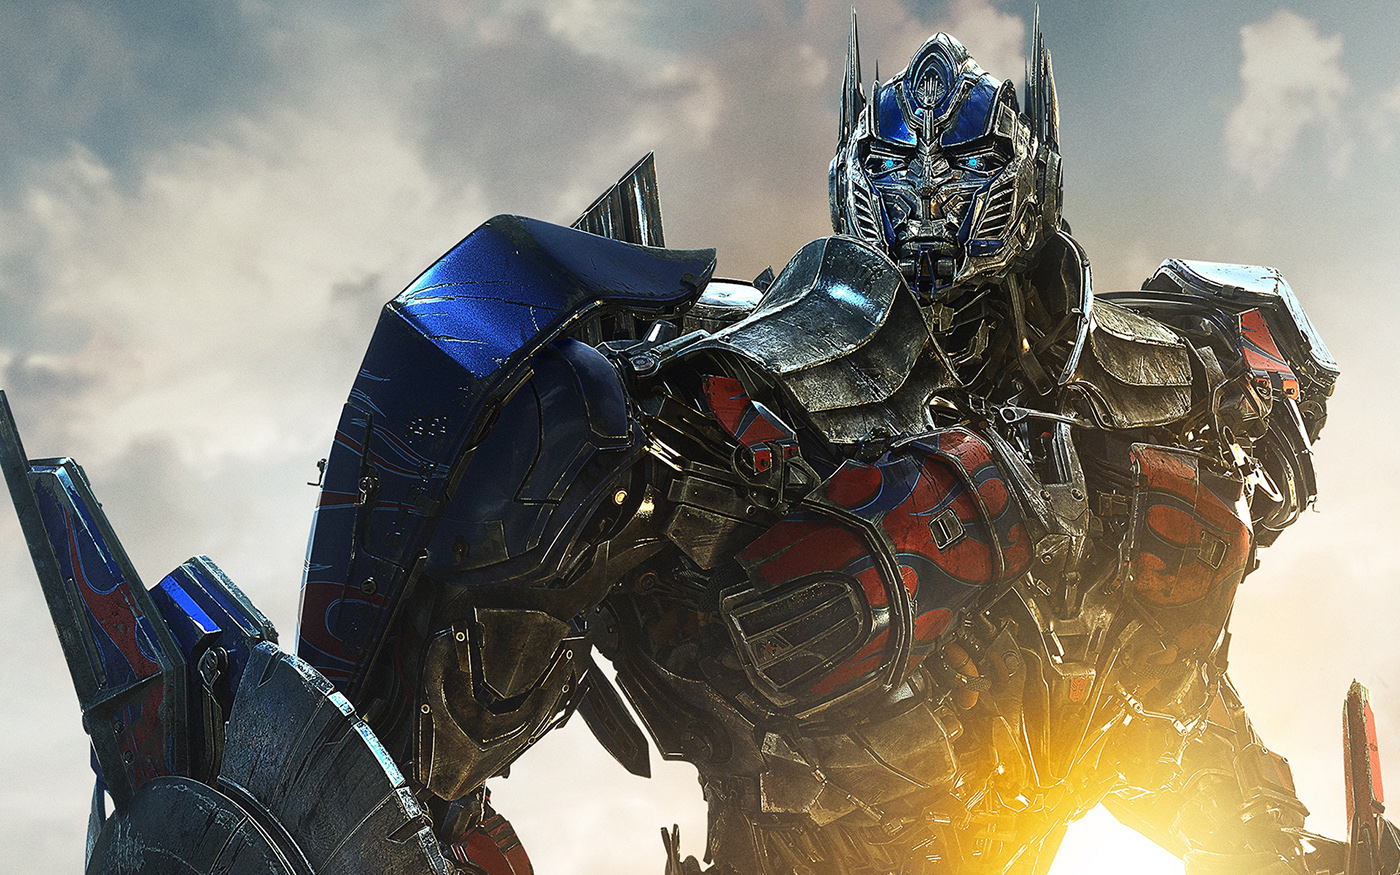 Még több Autobot mutatkozott be a Transformers: The Last Knight részből